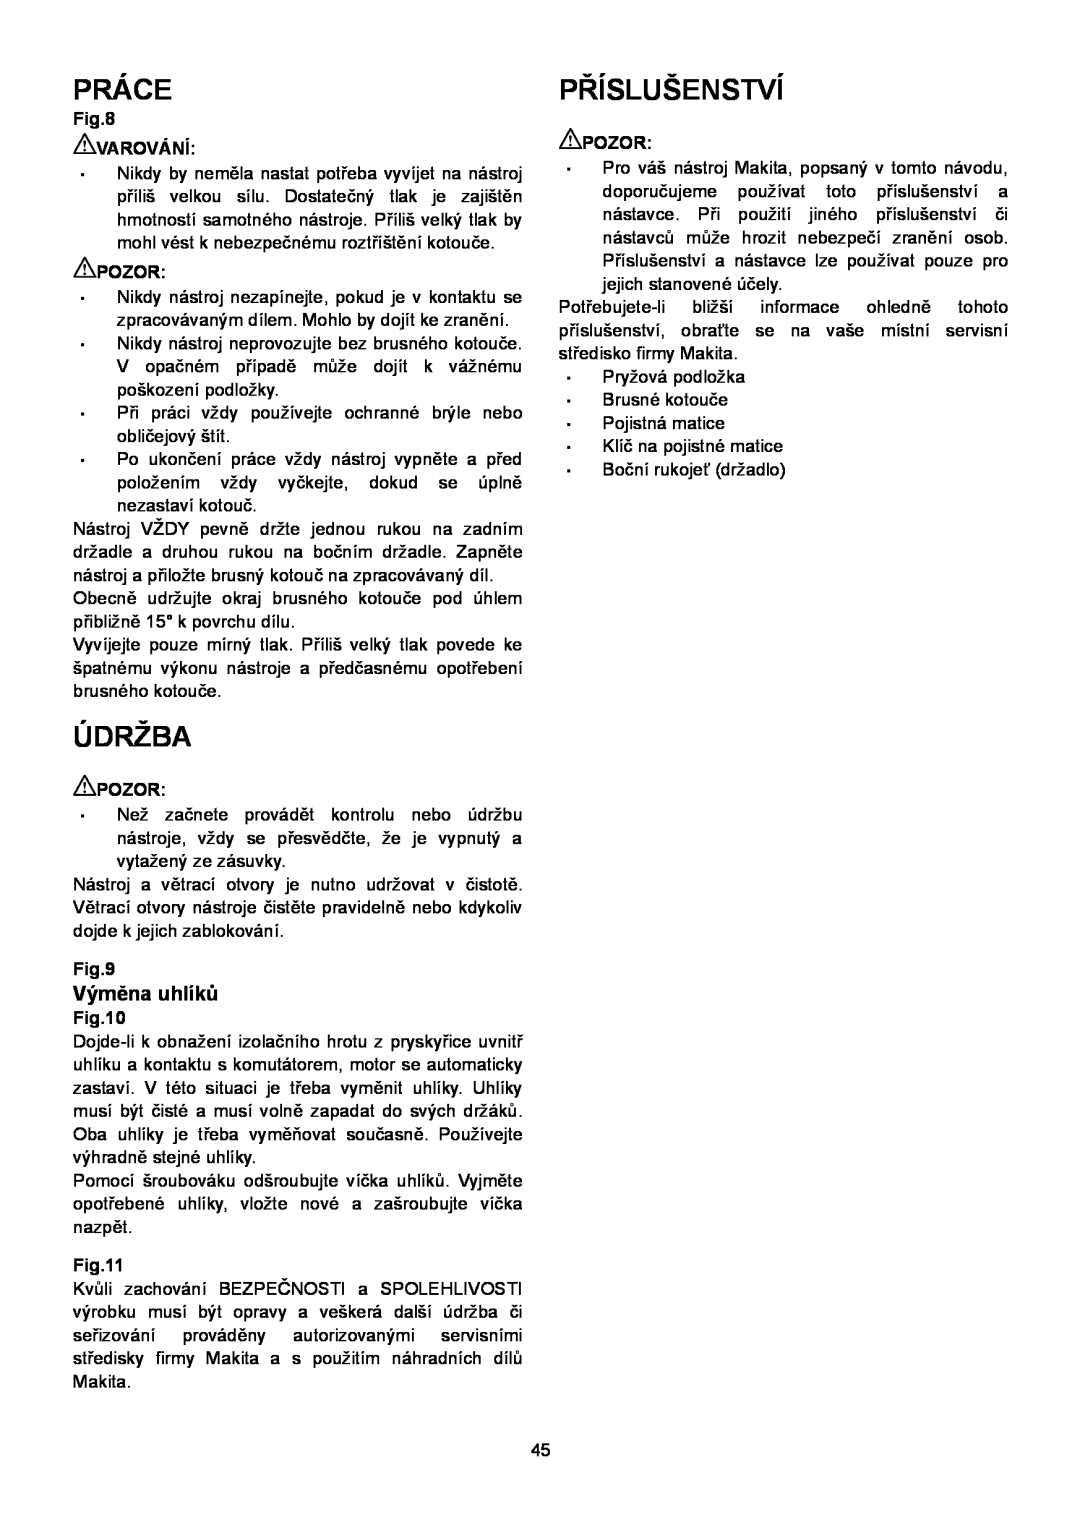 Makita SA7000C instruction manual Práce, Příslušenství, Údržba, Výměna uhlíků 